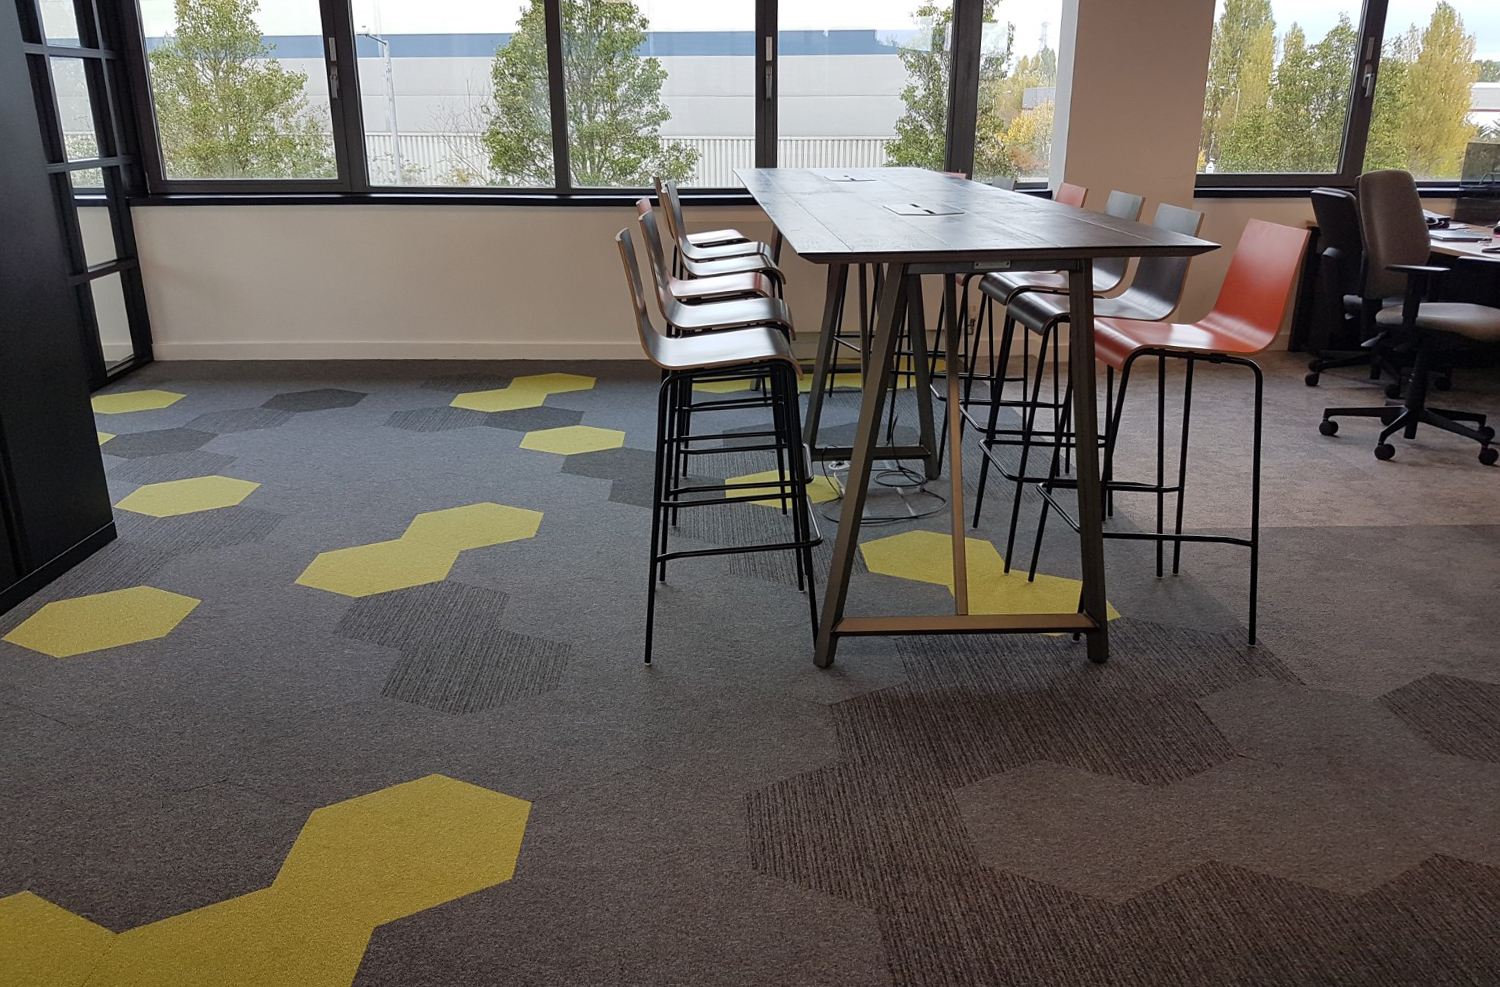 Hexagonal floor tiles. Hexagon carpet tiles in office design